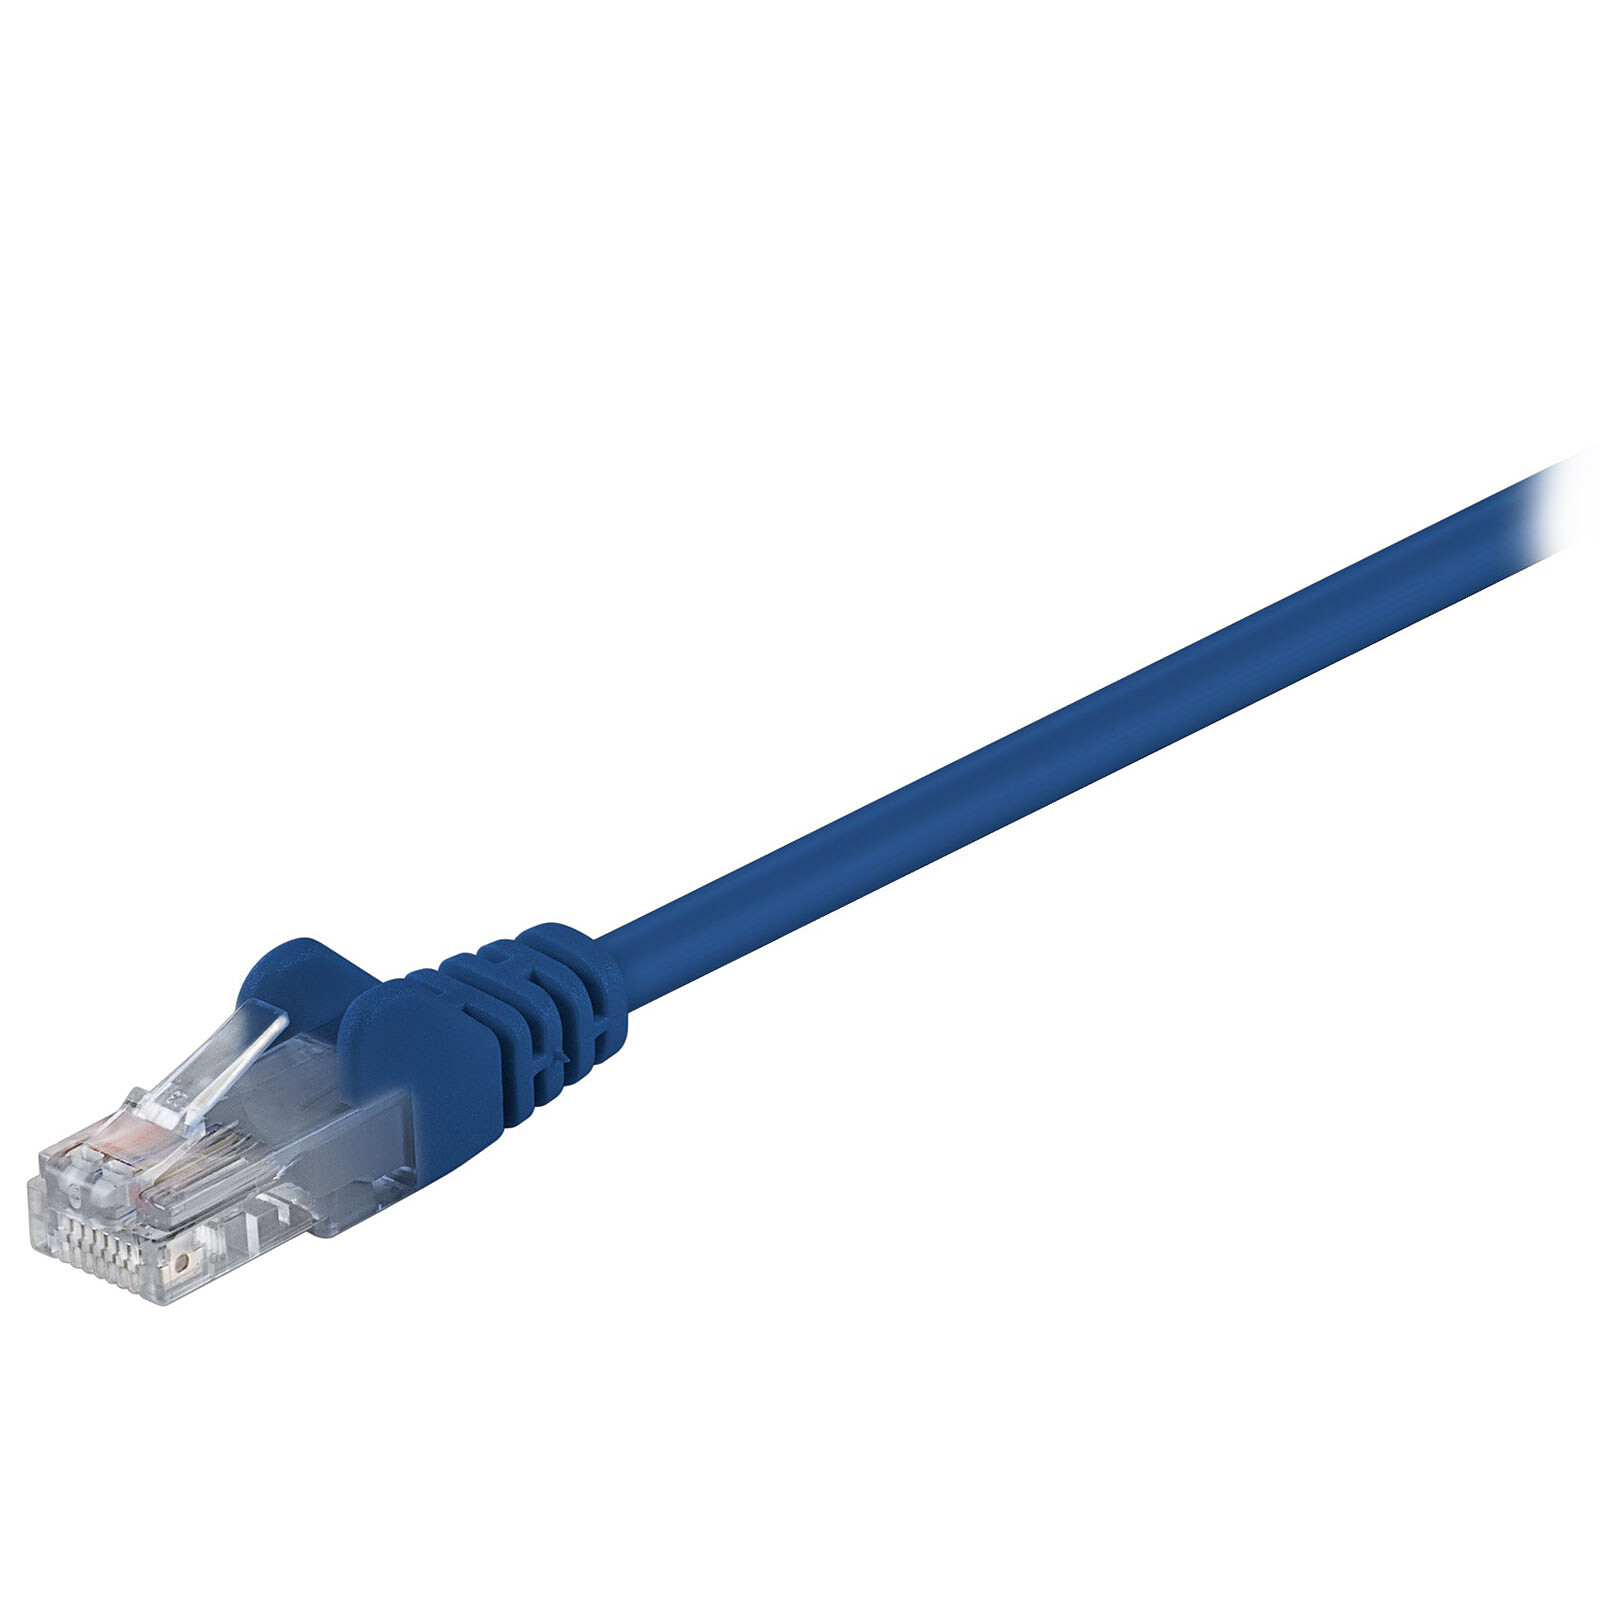 Cable RJ45 de categoría 6 F/UTP 2 m (beis) - Cable RJ45 - LDLC